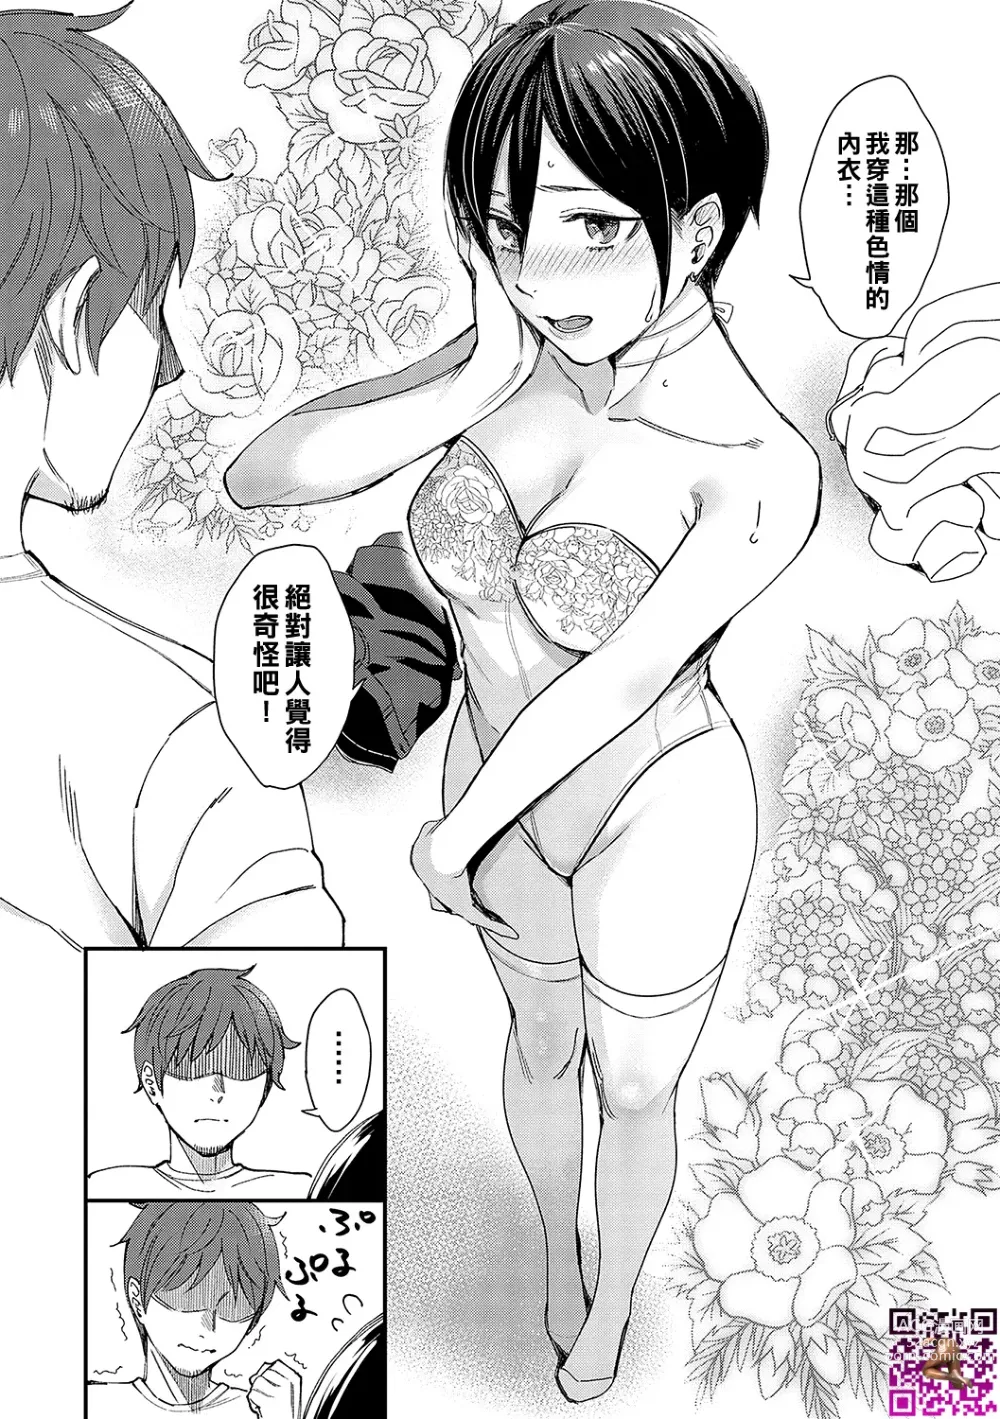 Page 8 of manga Kimi wa Tennenshoku